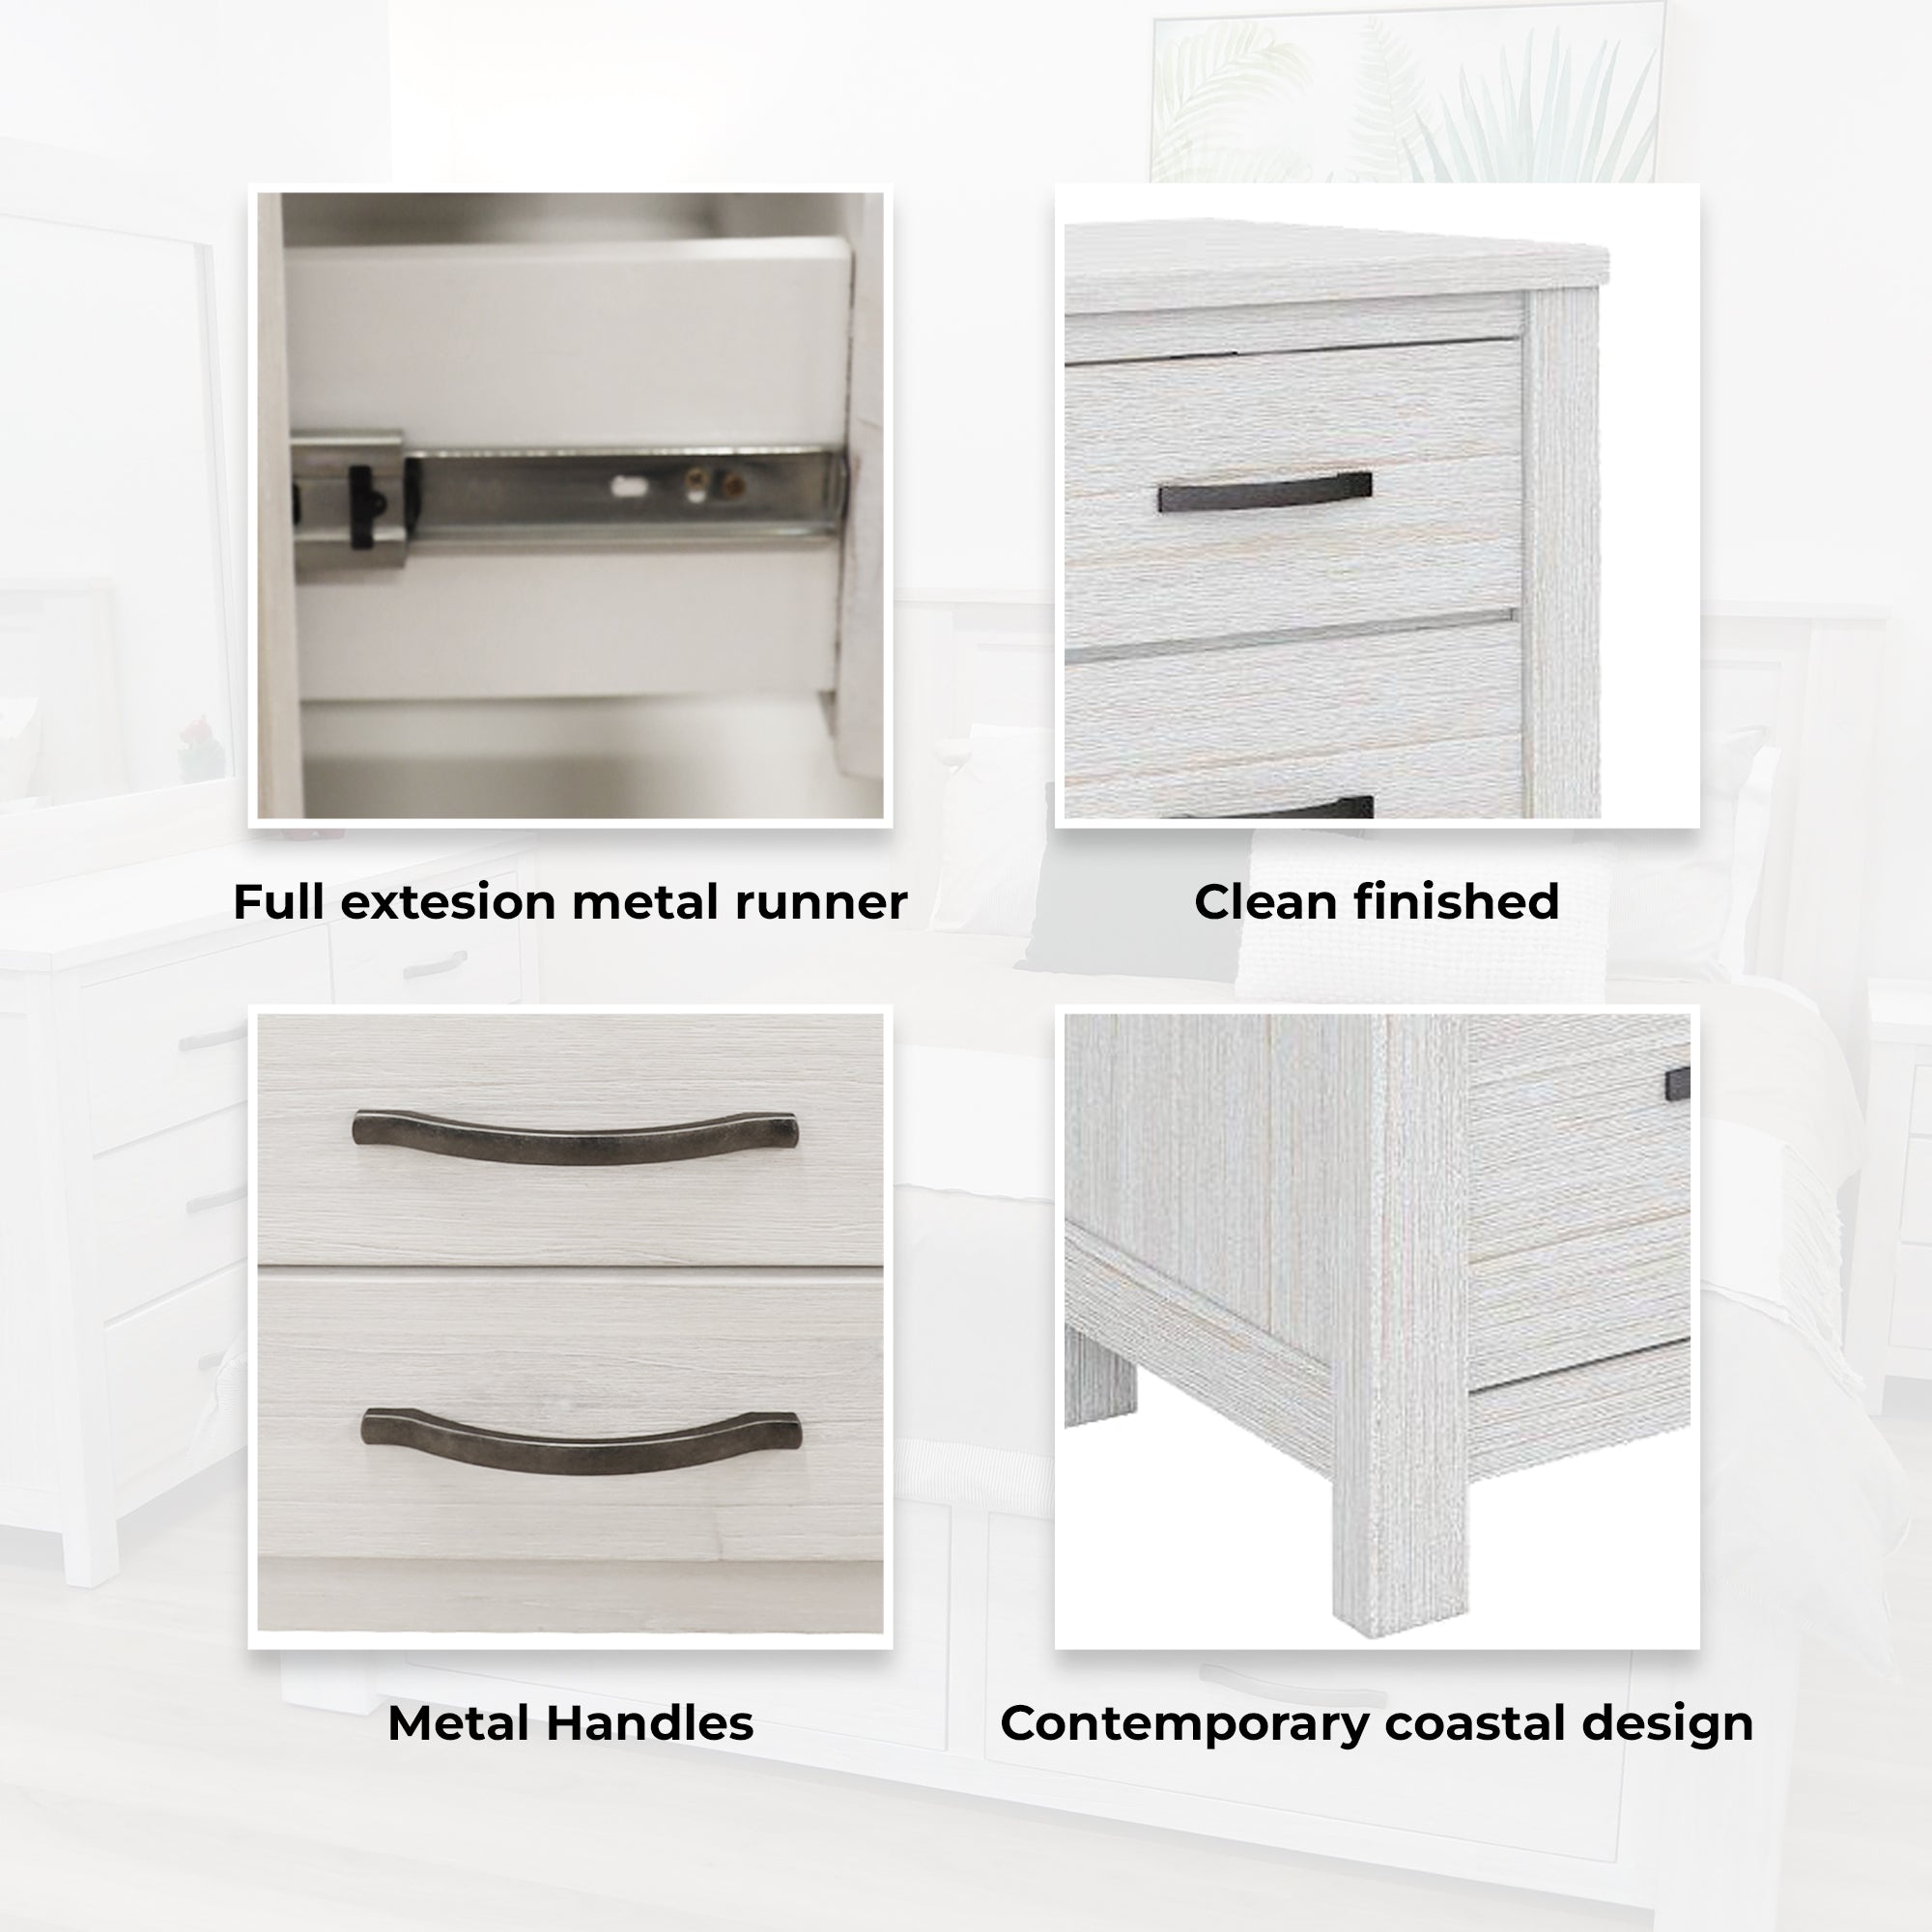 Foxglove Dresser 6 Chest of Drawers Solid Wood Tallboy Storage Cabinet - White Deals499